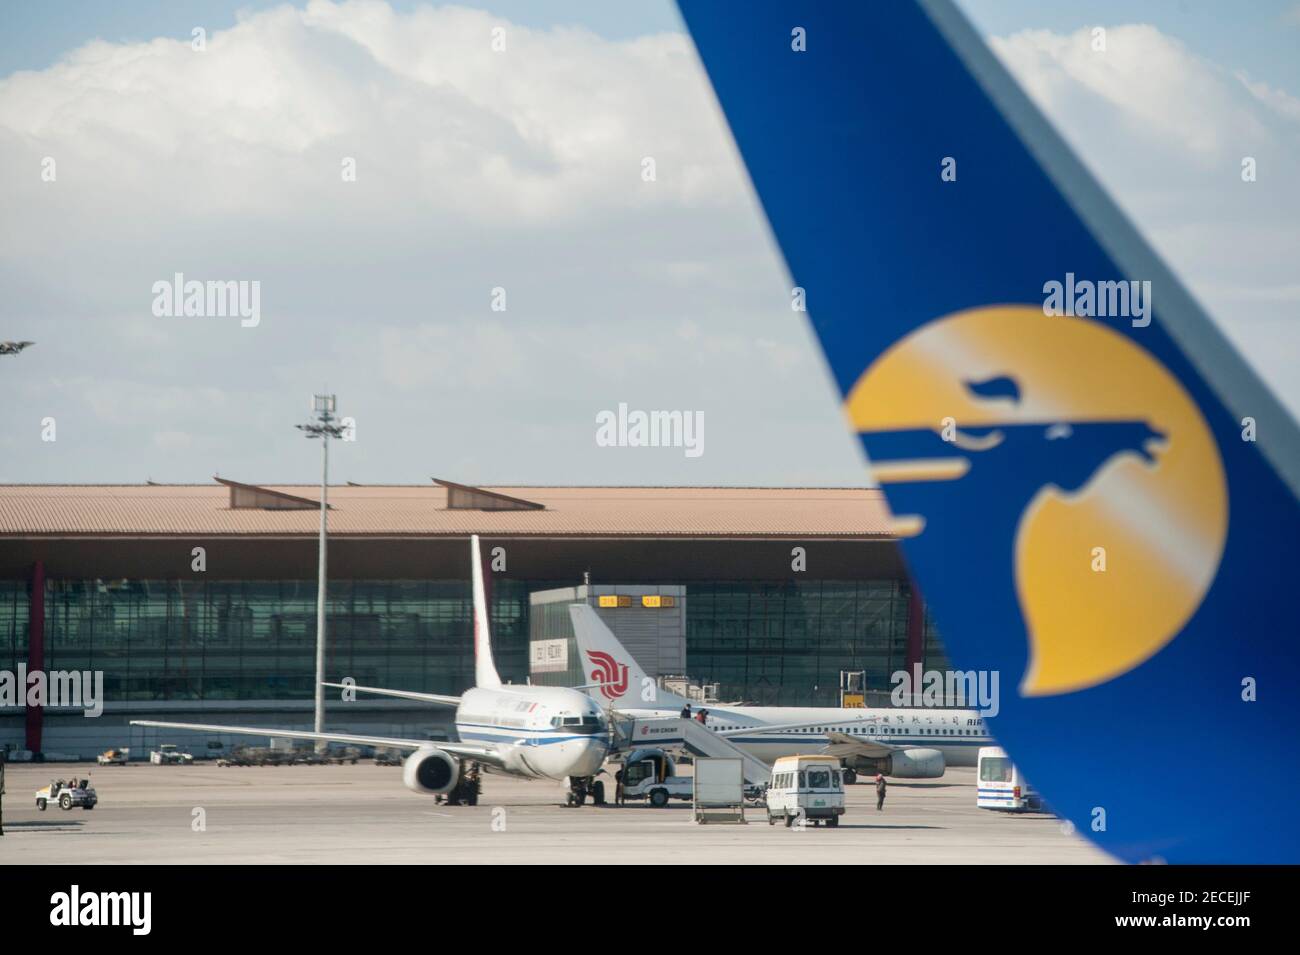 Ein Flugzeug der Air China wird auf dem Vorfeld geparkt, während ein Flügelchen der Mongolian Airlines mit seinem Logo an einem Tag ohne Umweltverschmutzung am Beijing Capital Airport im Shunyi-Bezirk der chinesischen Hauptstadt Peking, China, VR China, vorbeifährt. © Time-Snaps Stockfoto